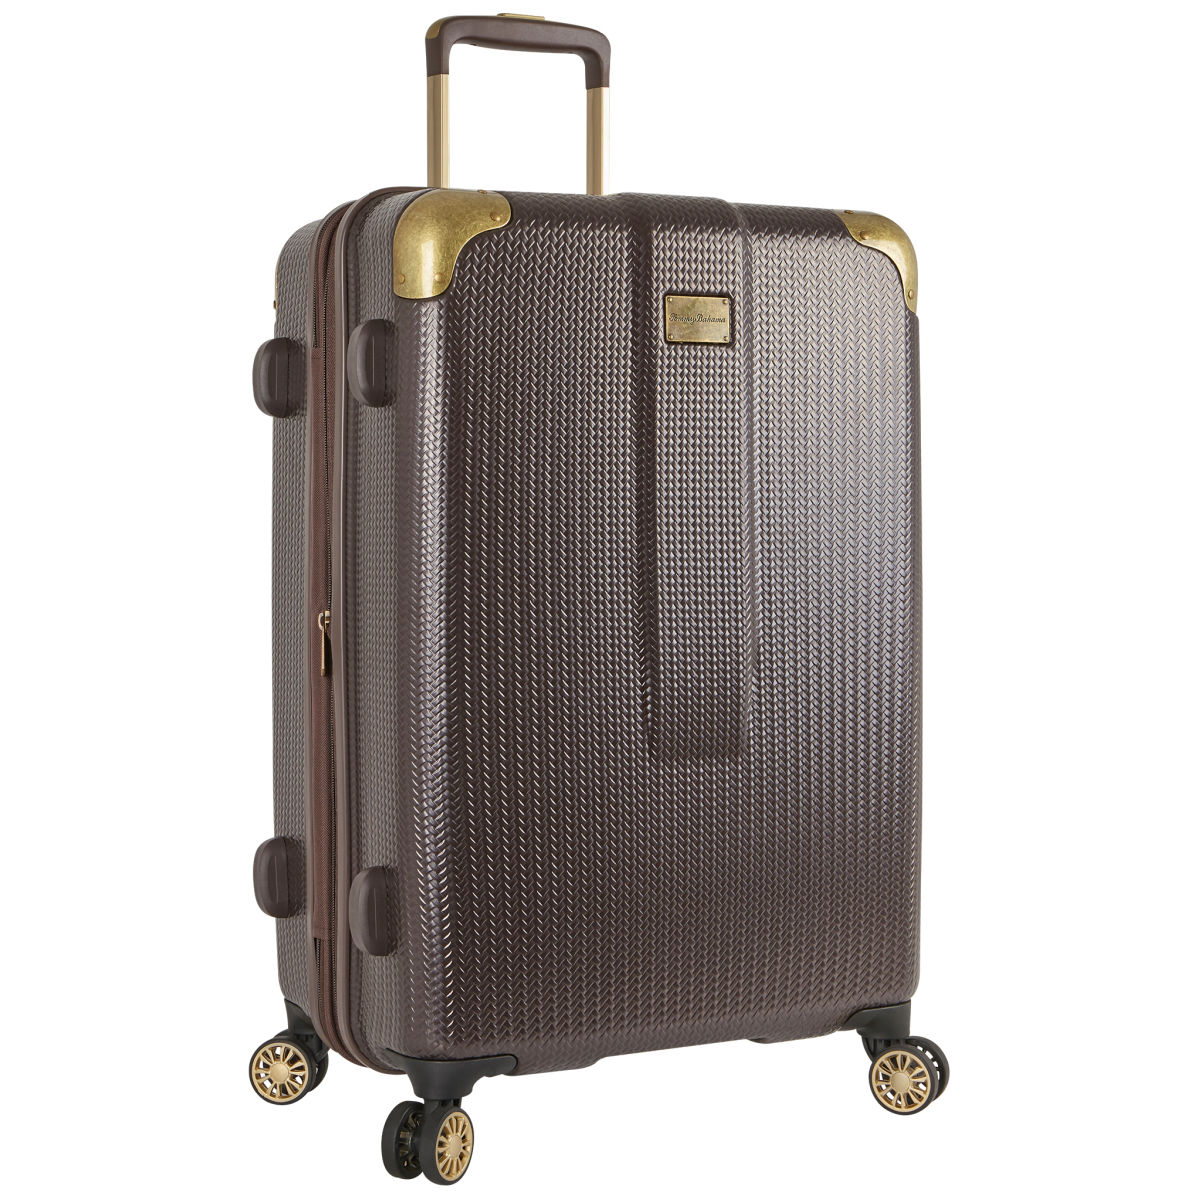 Tommy Bahama Hardside 24-Inch Spinner Luggage Suitcase